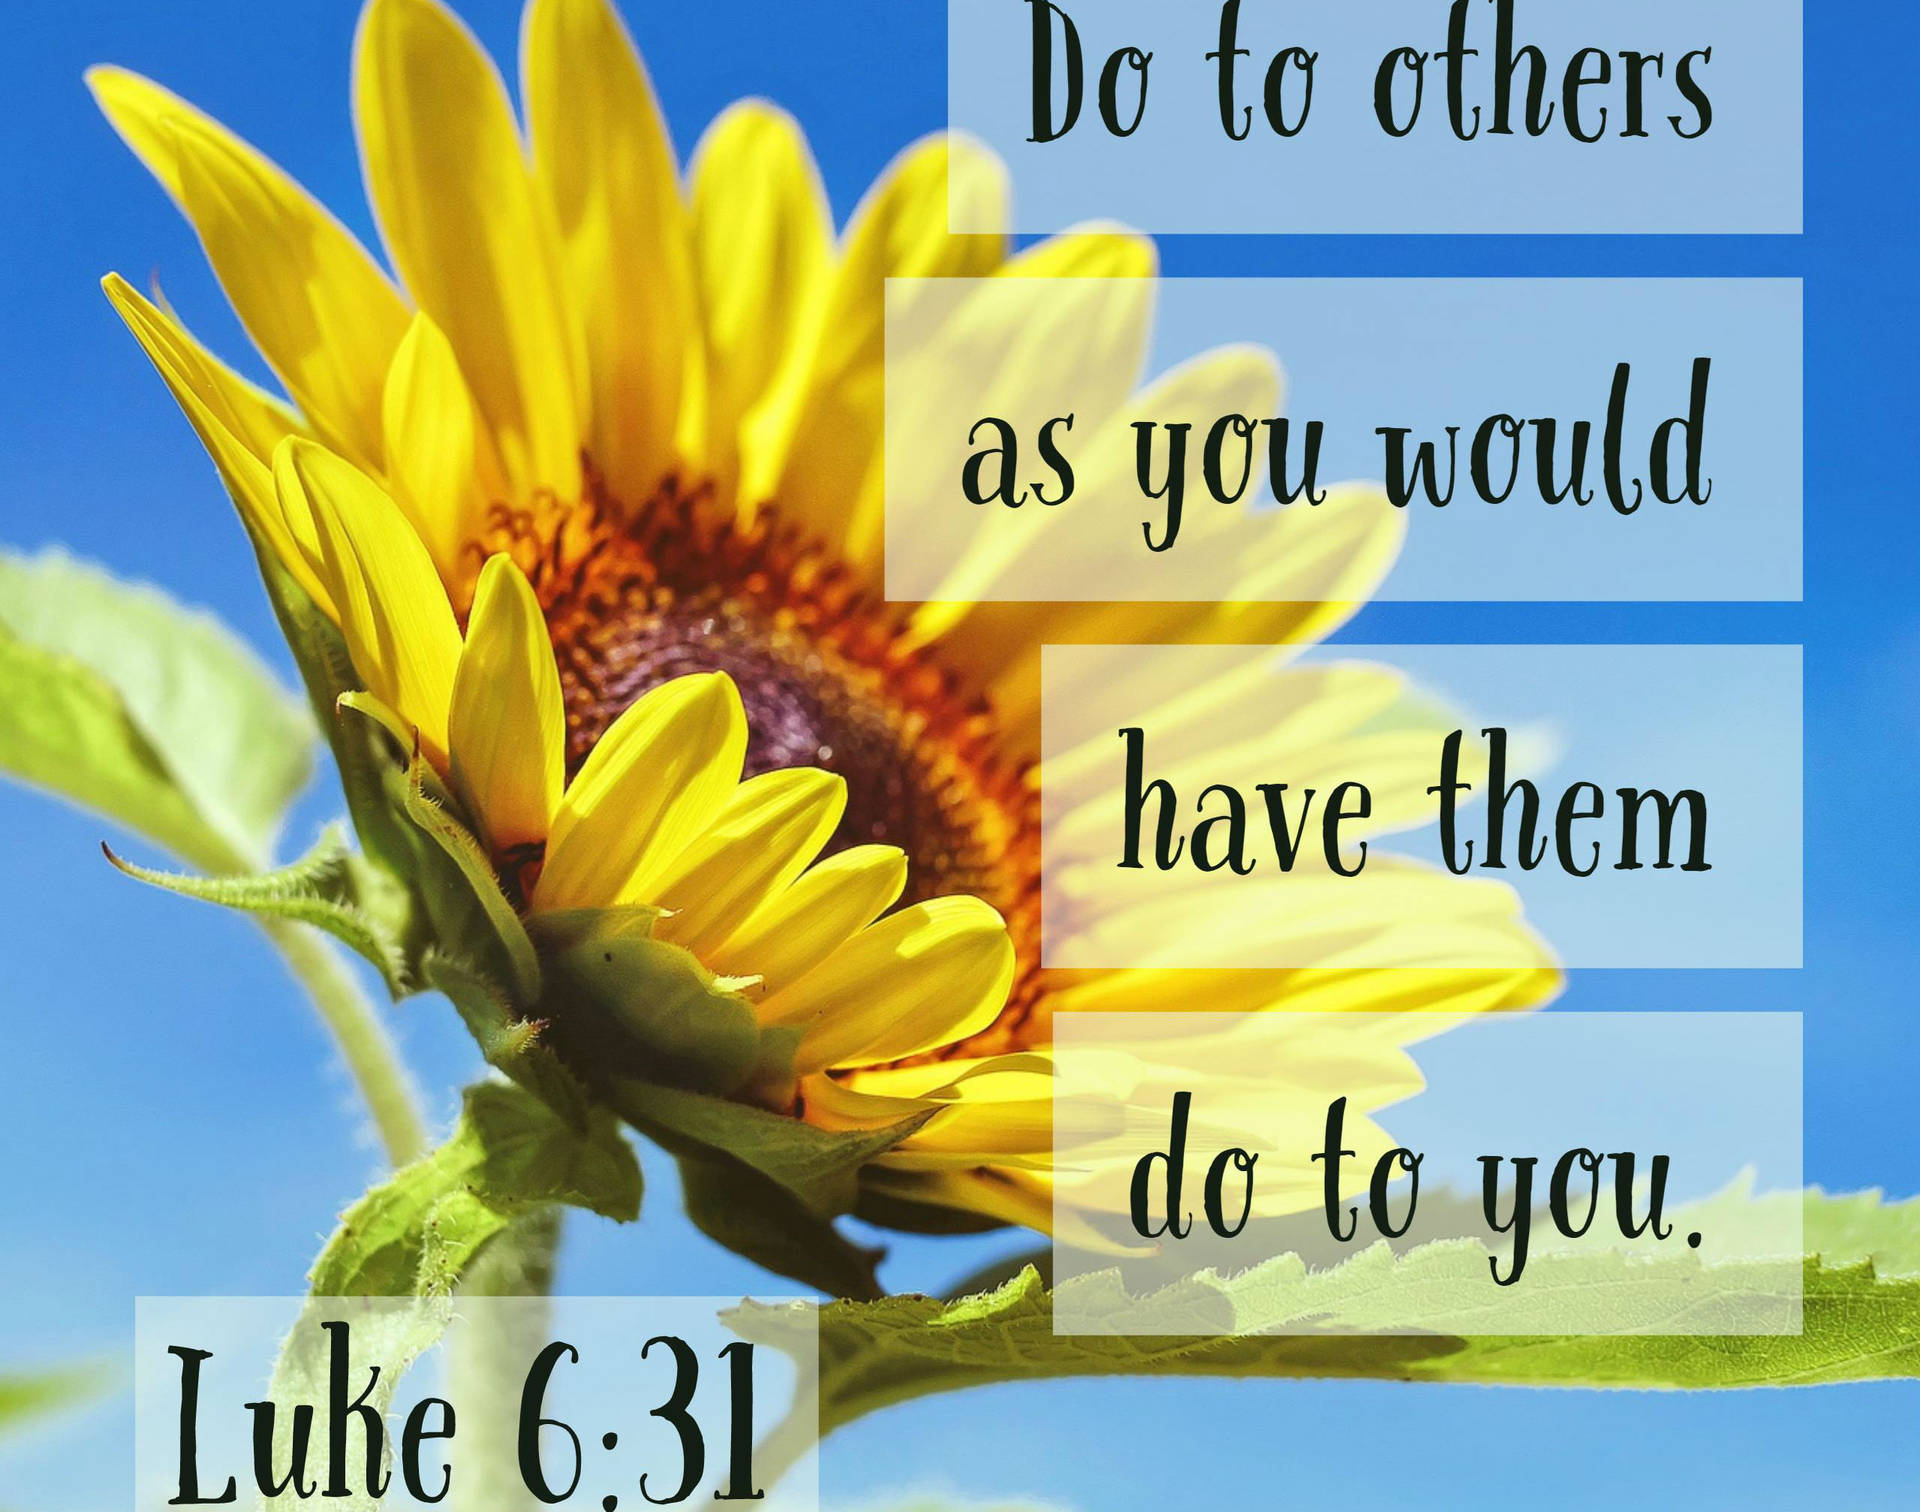 Golden Rule Bible Quote Wallpaper